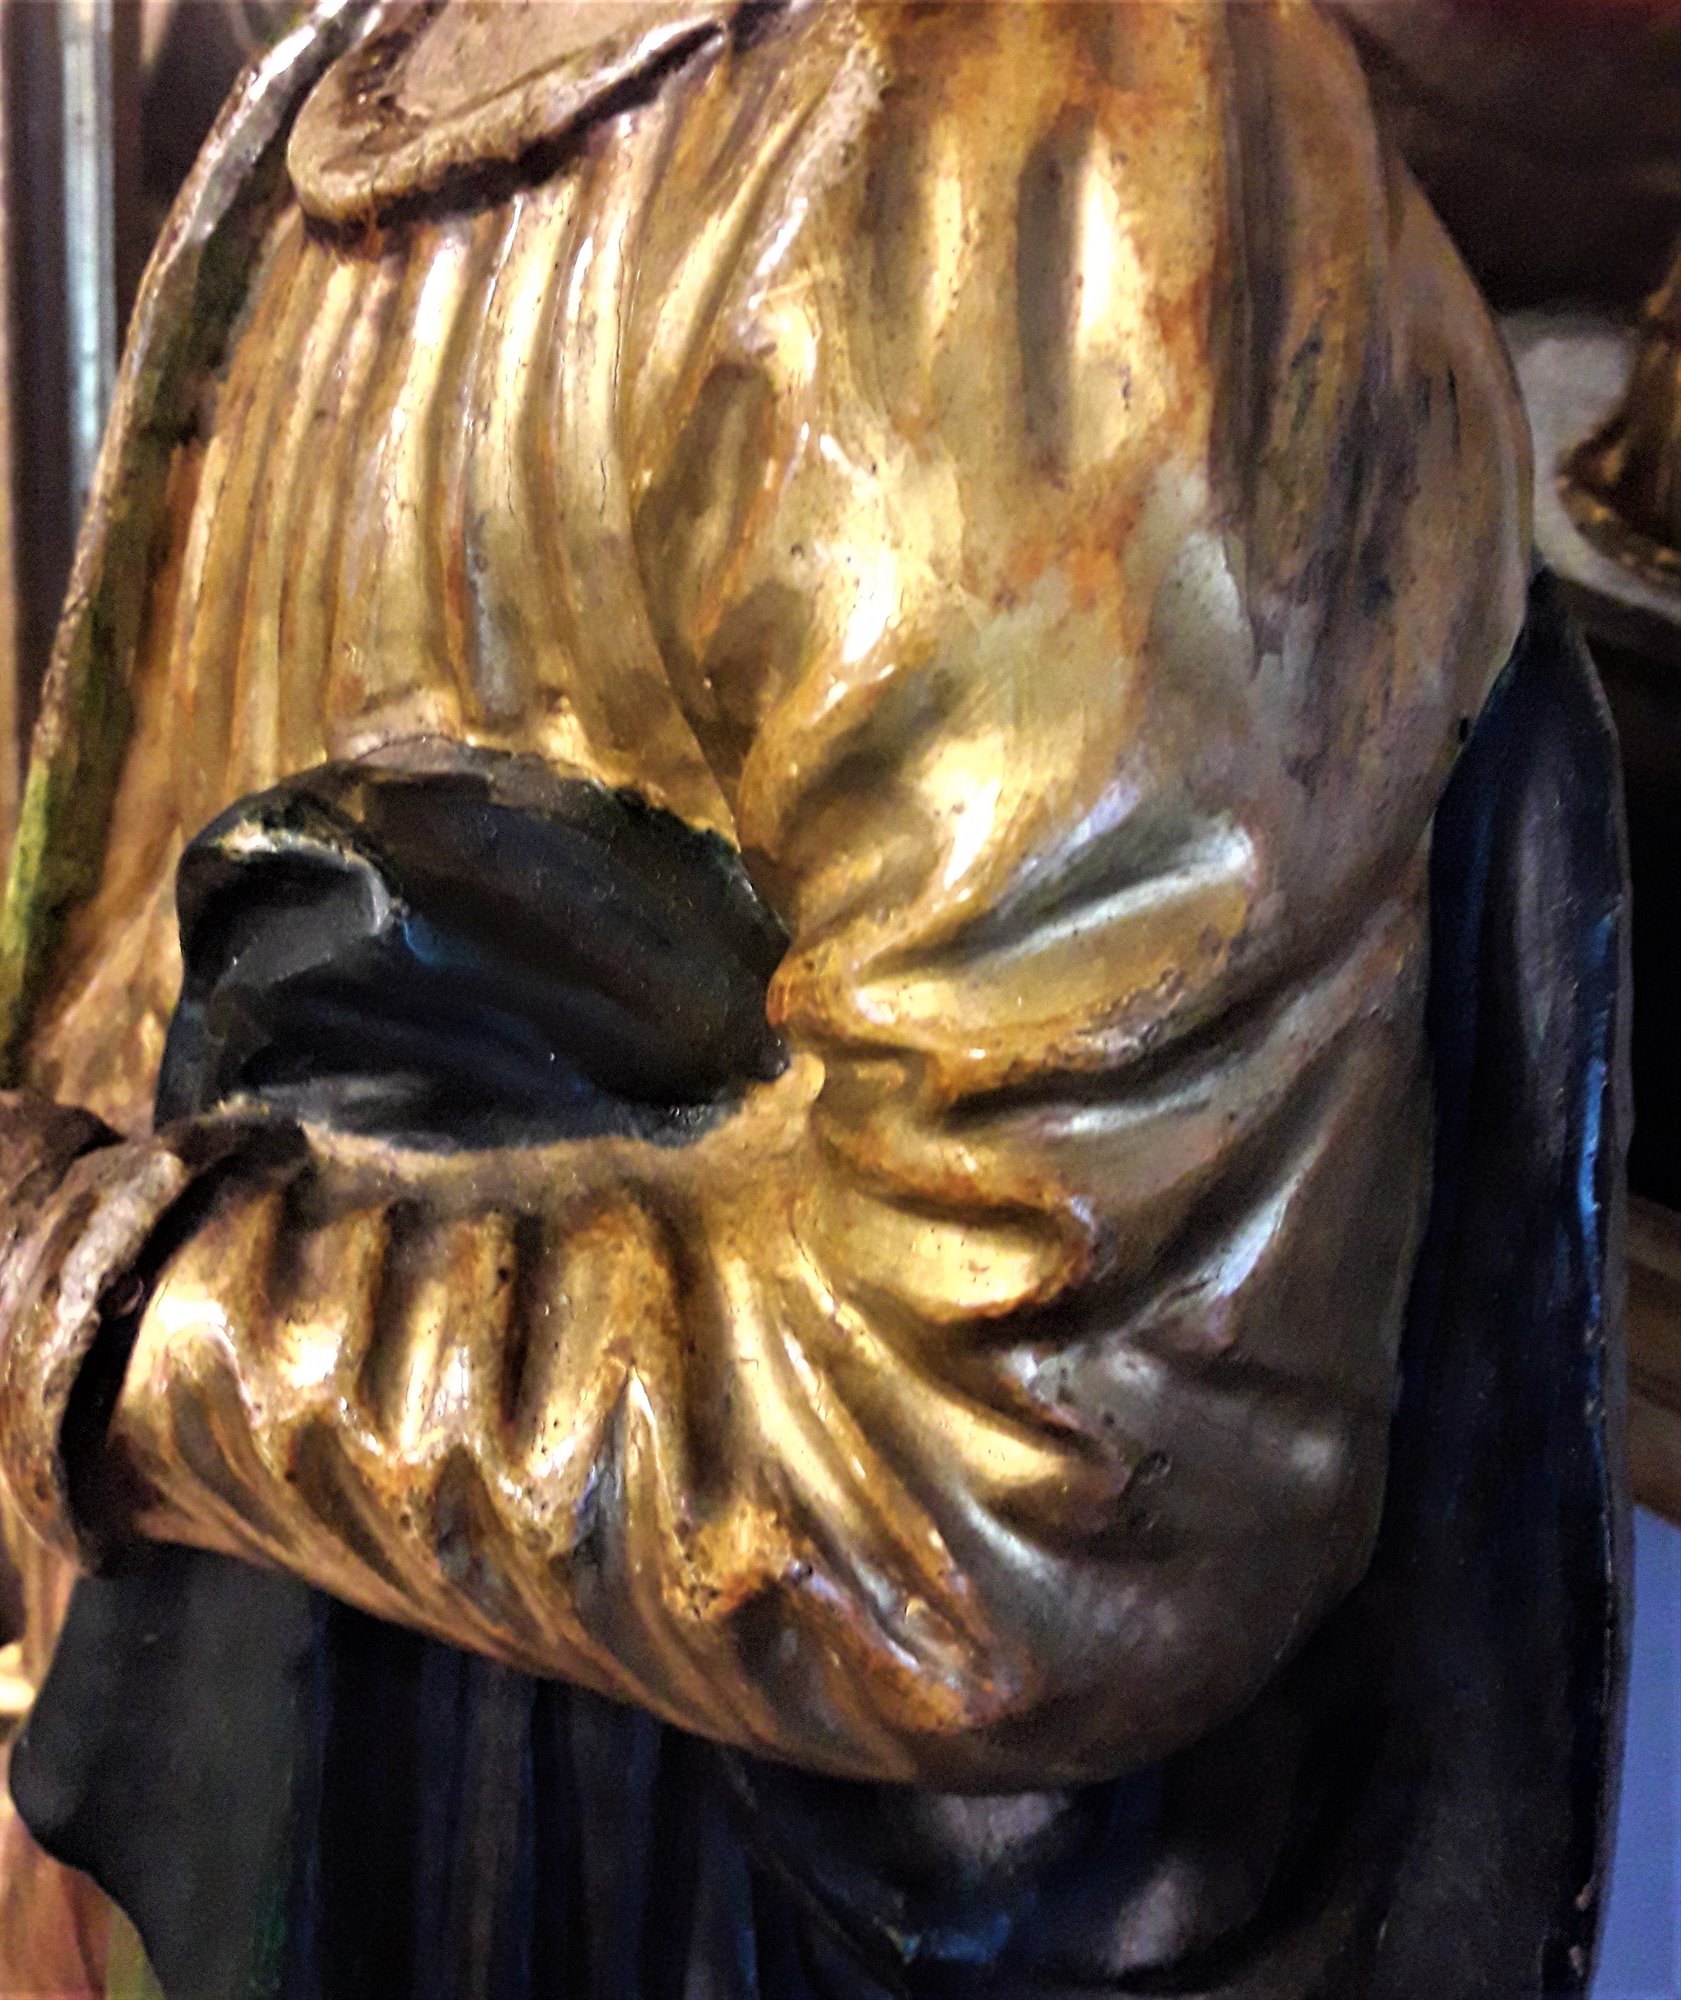 Santa Martire scultura lignea policroma e dorata